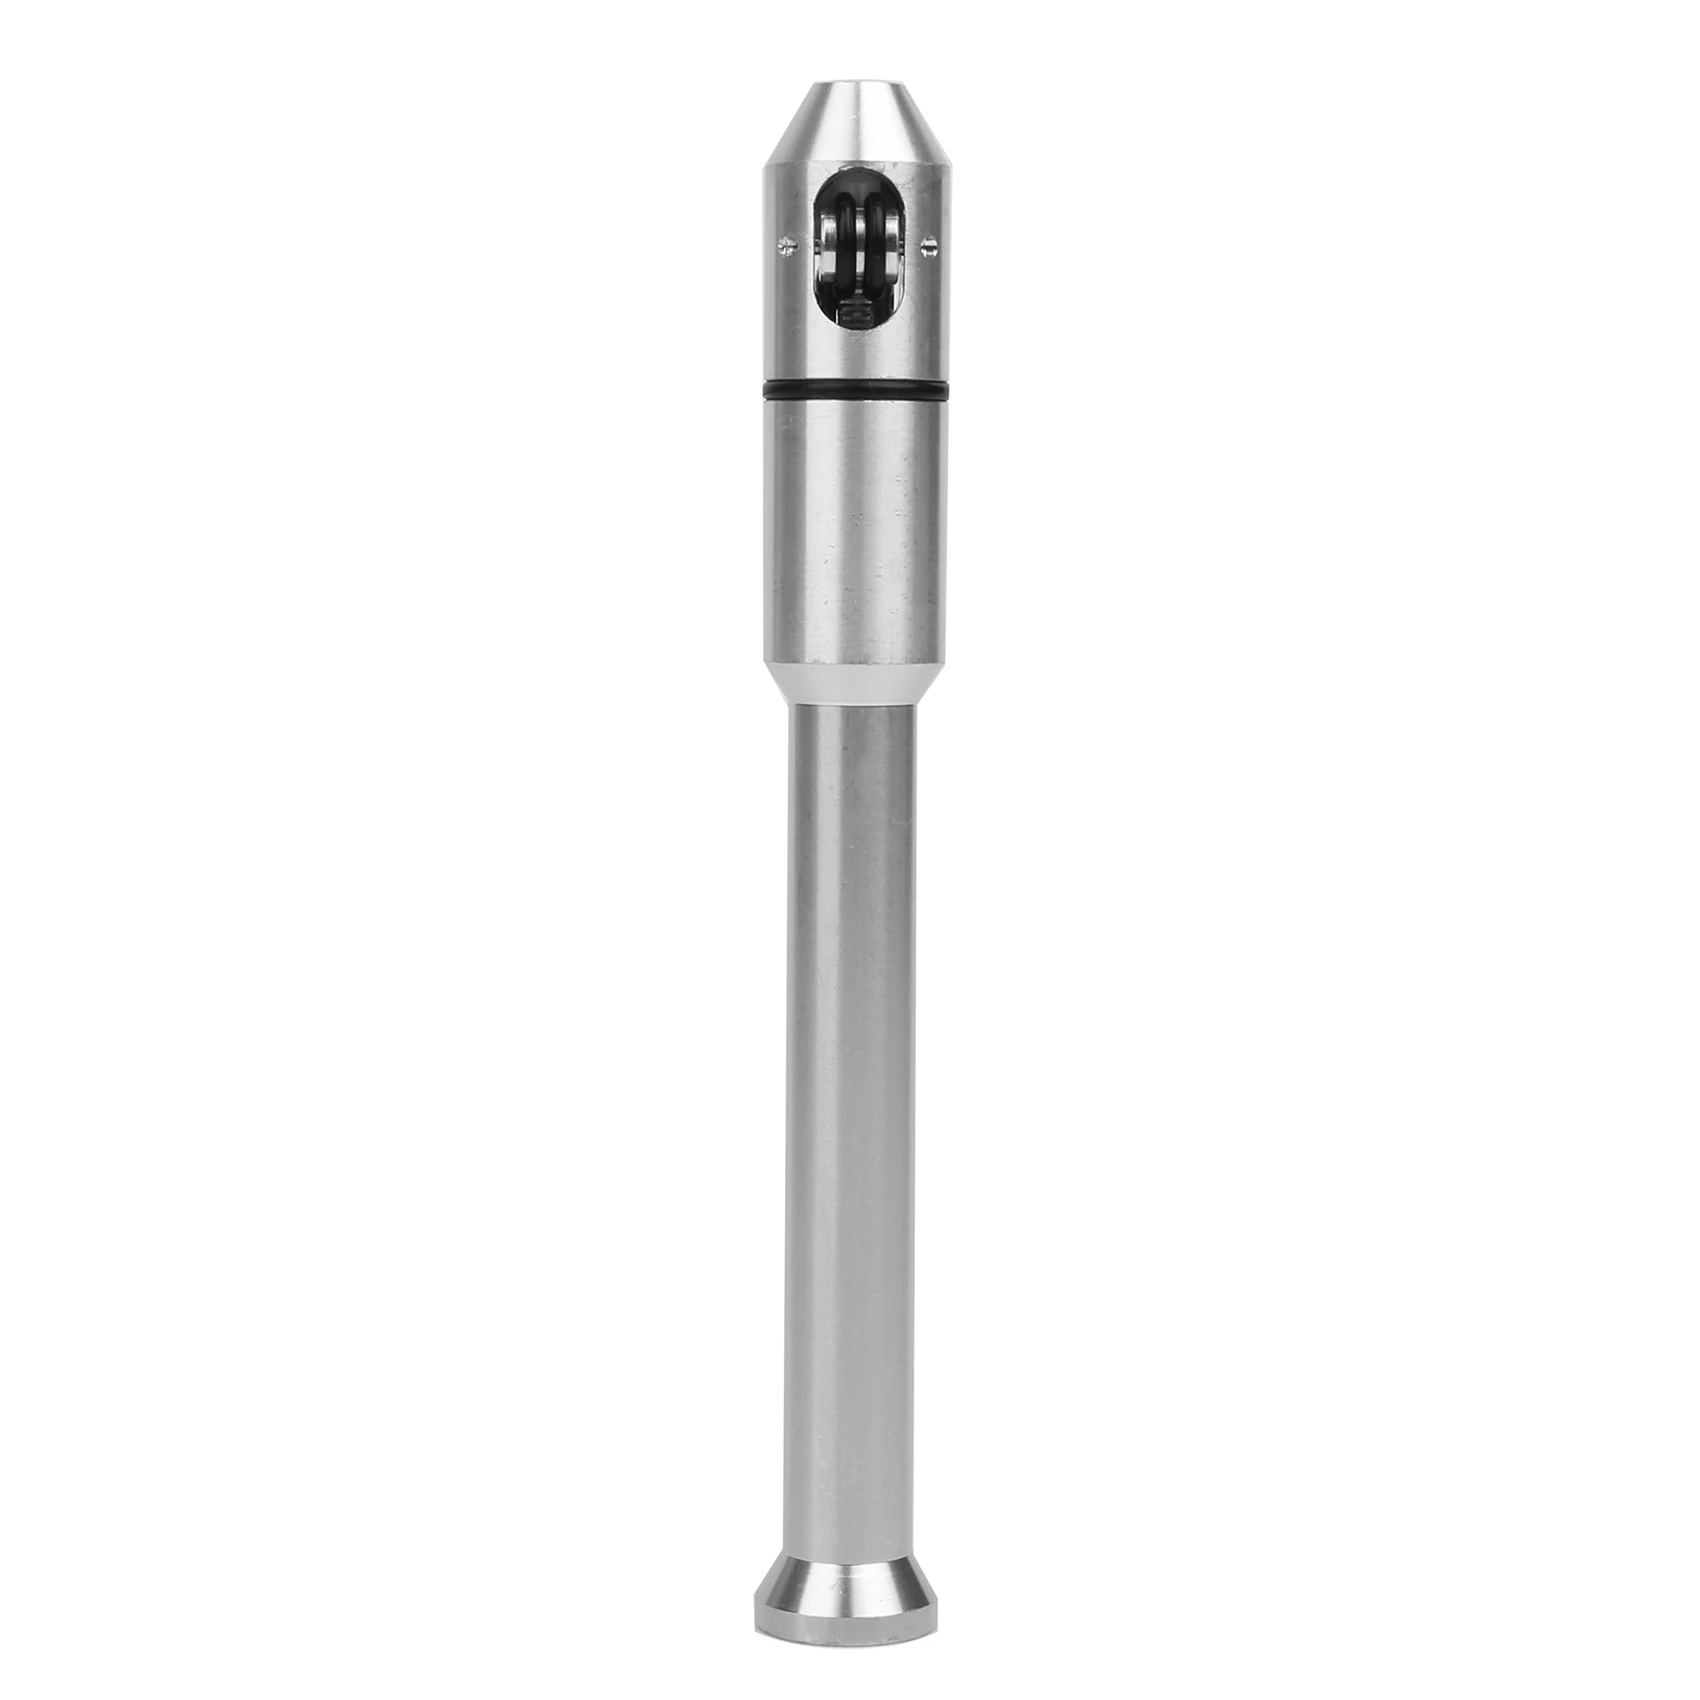  Сварочная ручка Tig Pen Finger Feeder Держатель стержня Присадочная проволока Ручка 1,0-3,2 мм (1/32 дюйма -1/8 дюйма) Аксессуары для сварщика2